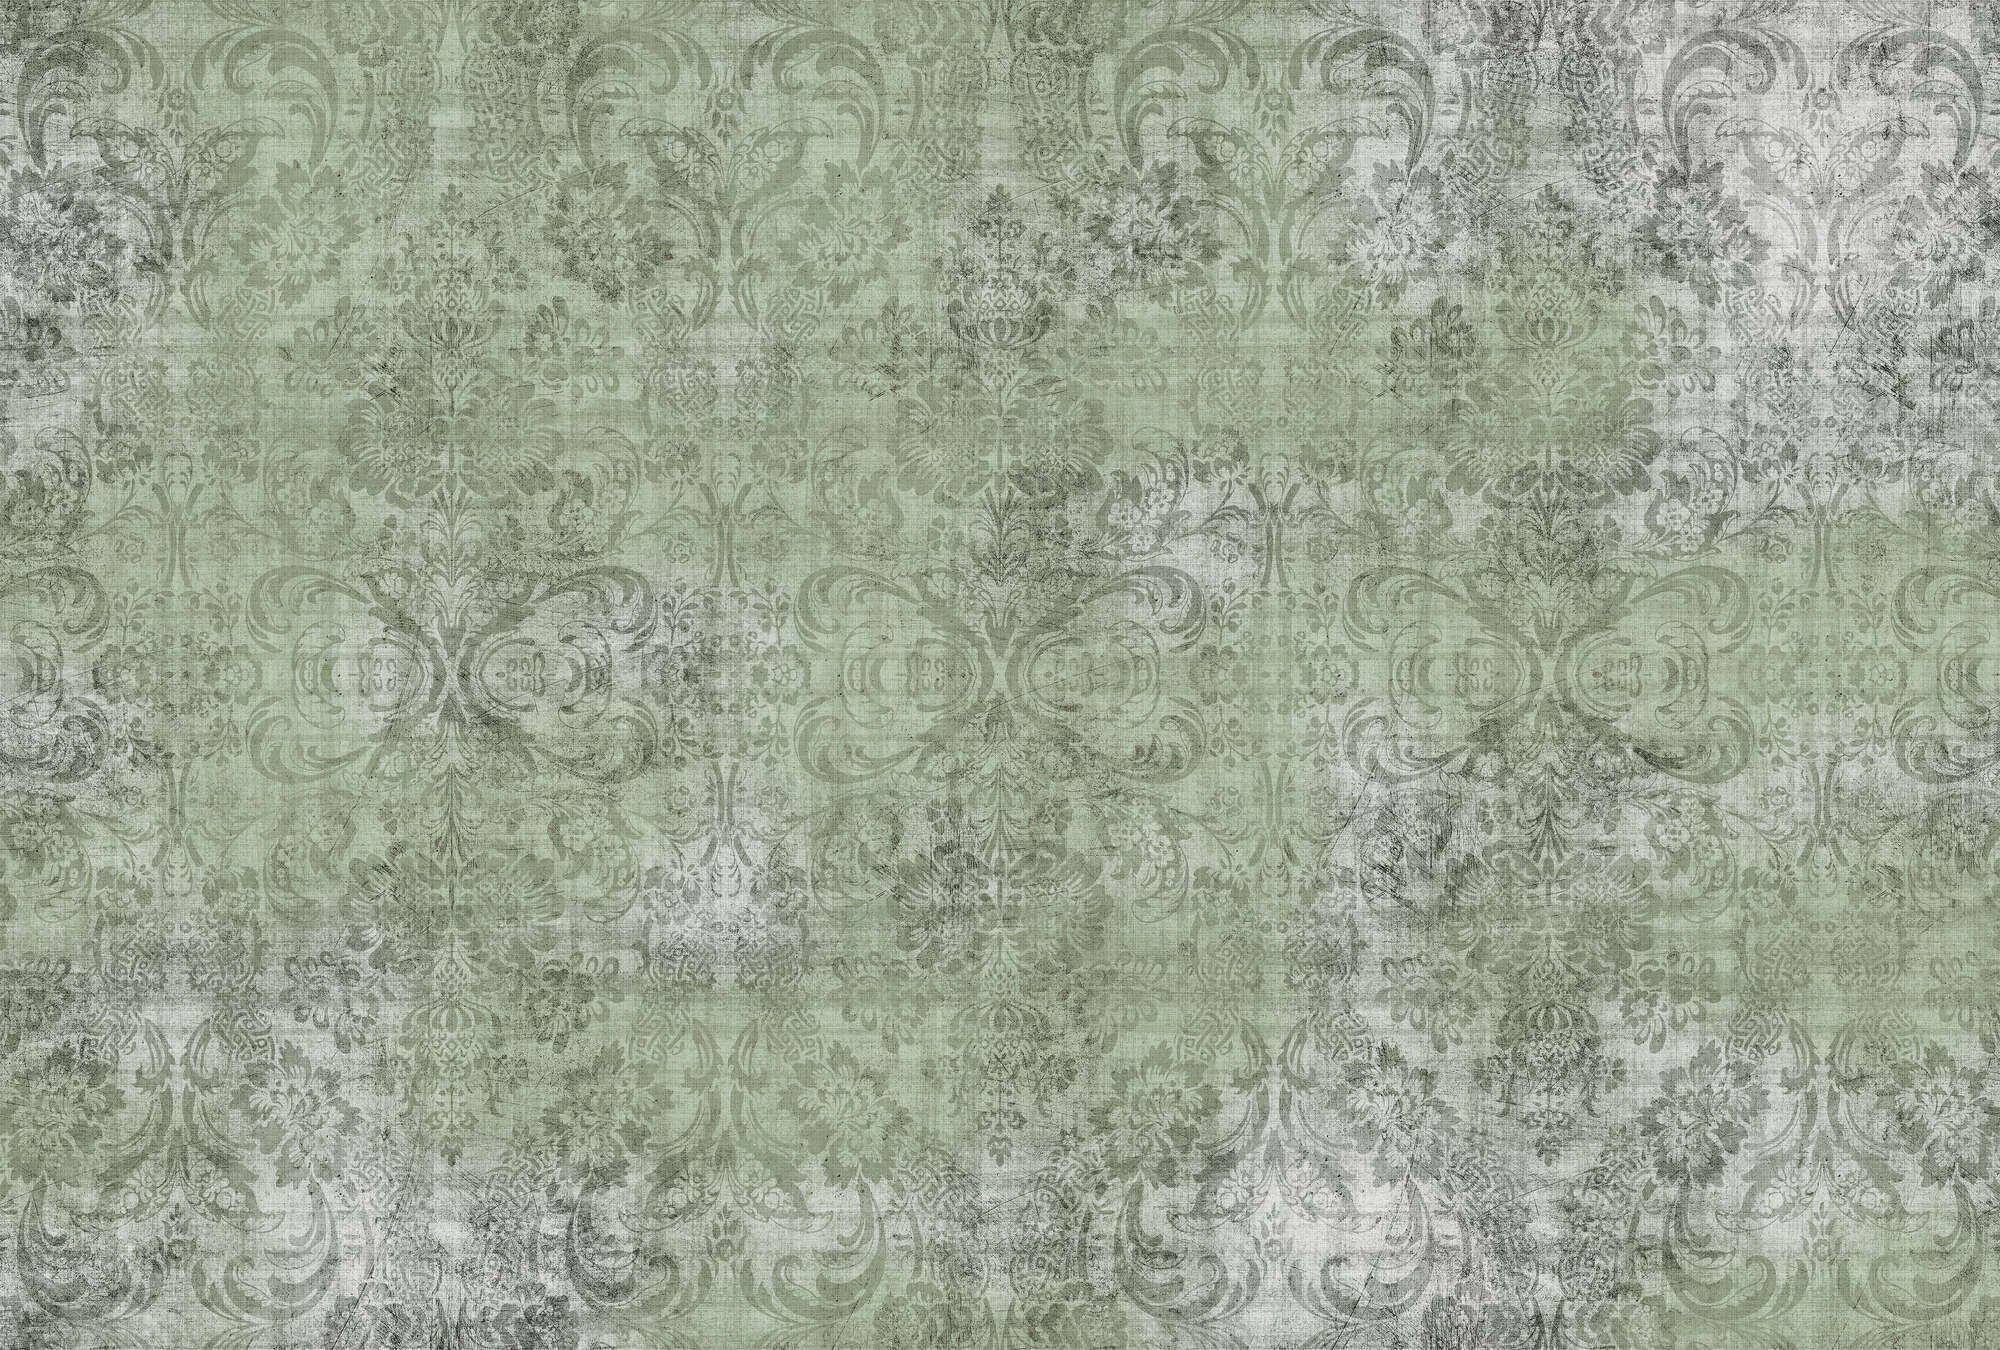             Vecchio damasco 2 - Ornamenti su carta da parati verde screziato - Natura qualita consistenza in lino naturale - Verde | Vello liscio opaco
        